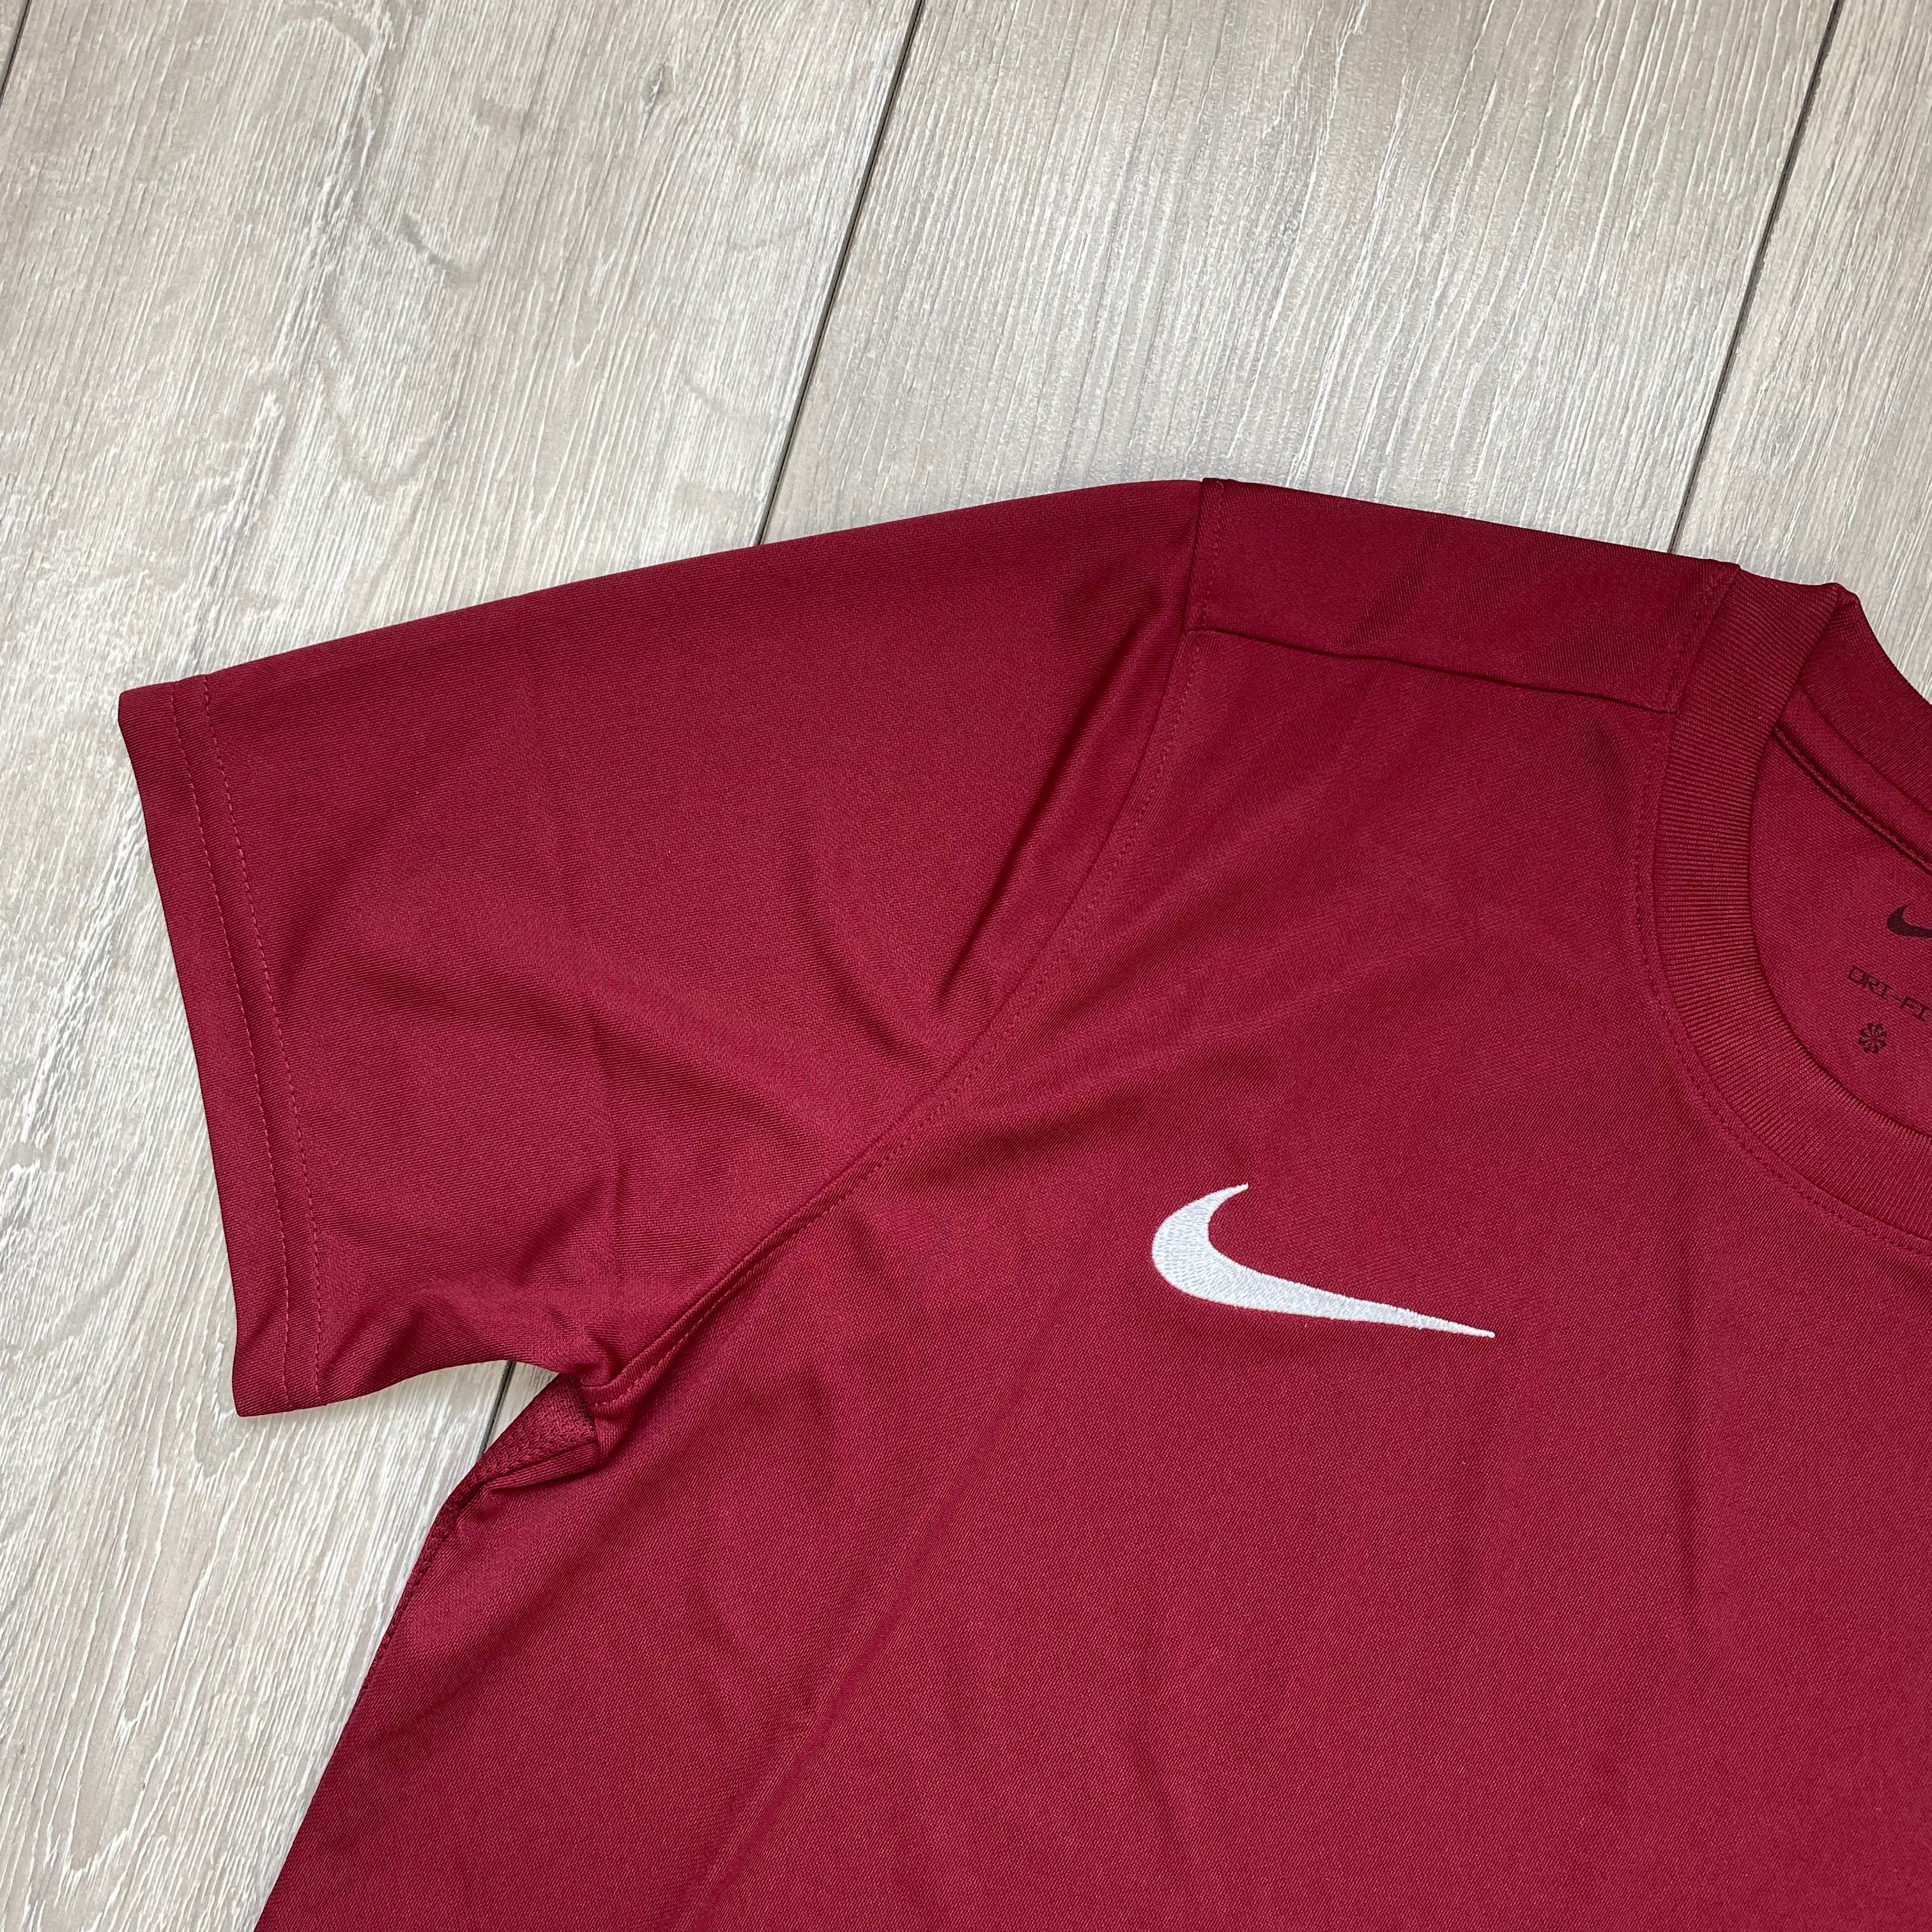 Nike Dri-Fit T-Shirt - Maroon